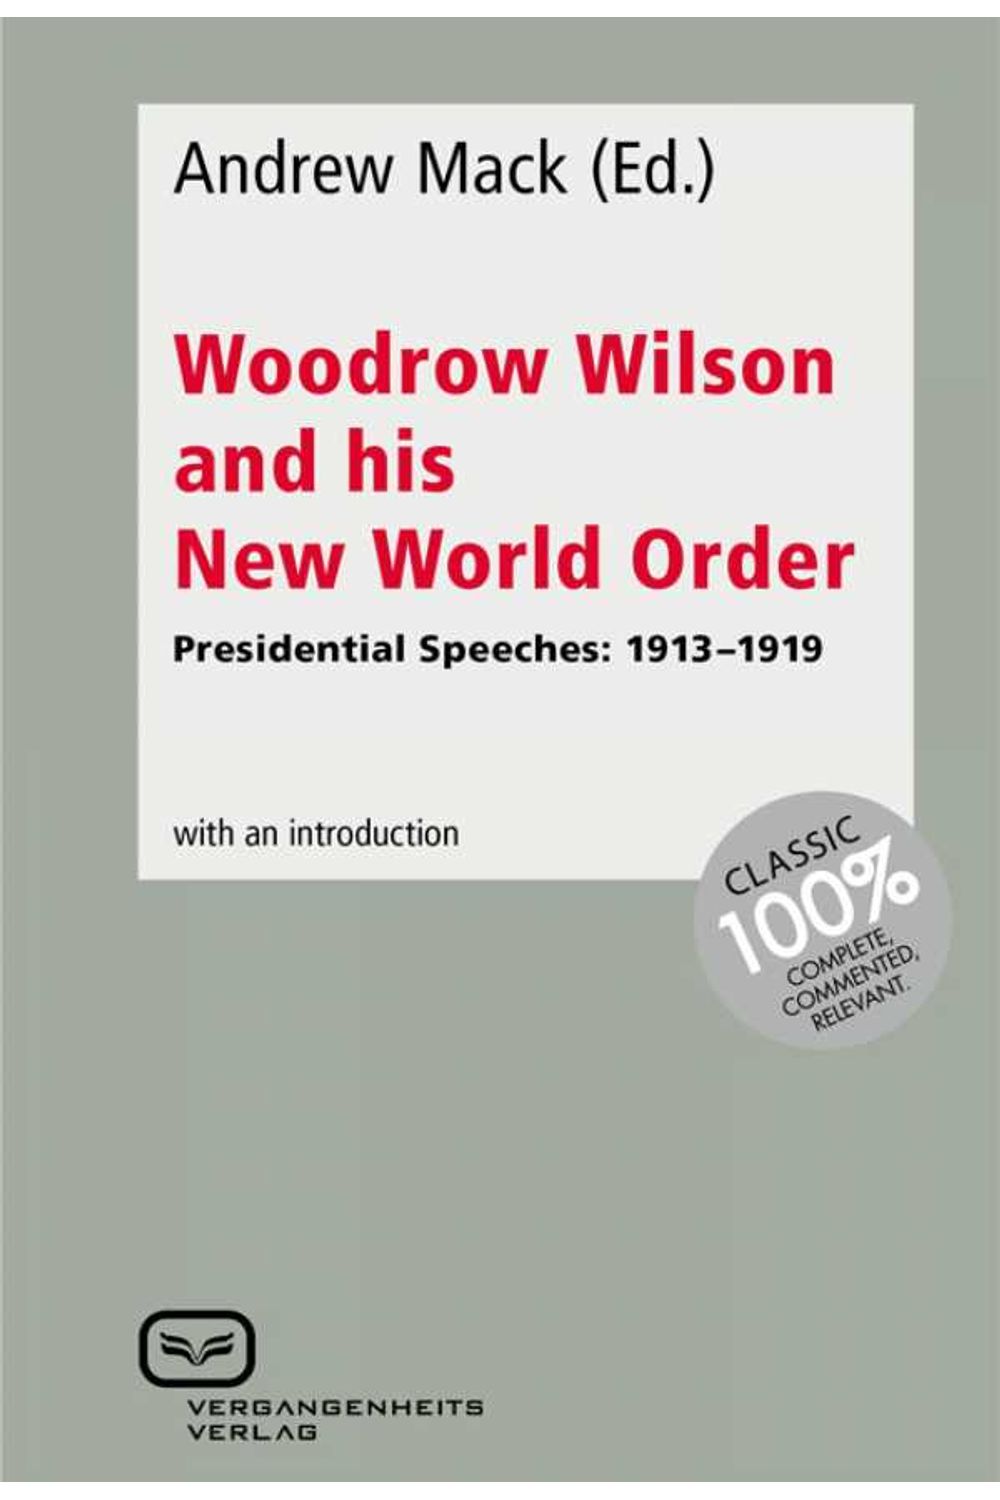 bw-woodrow-wilson-and-his-new-world-order-vergangenheitsverlag-9783940621900